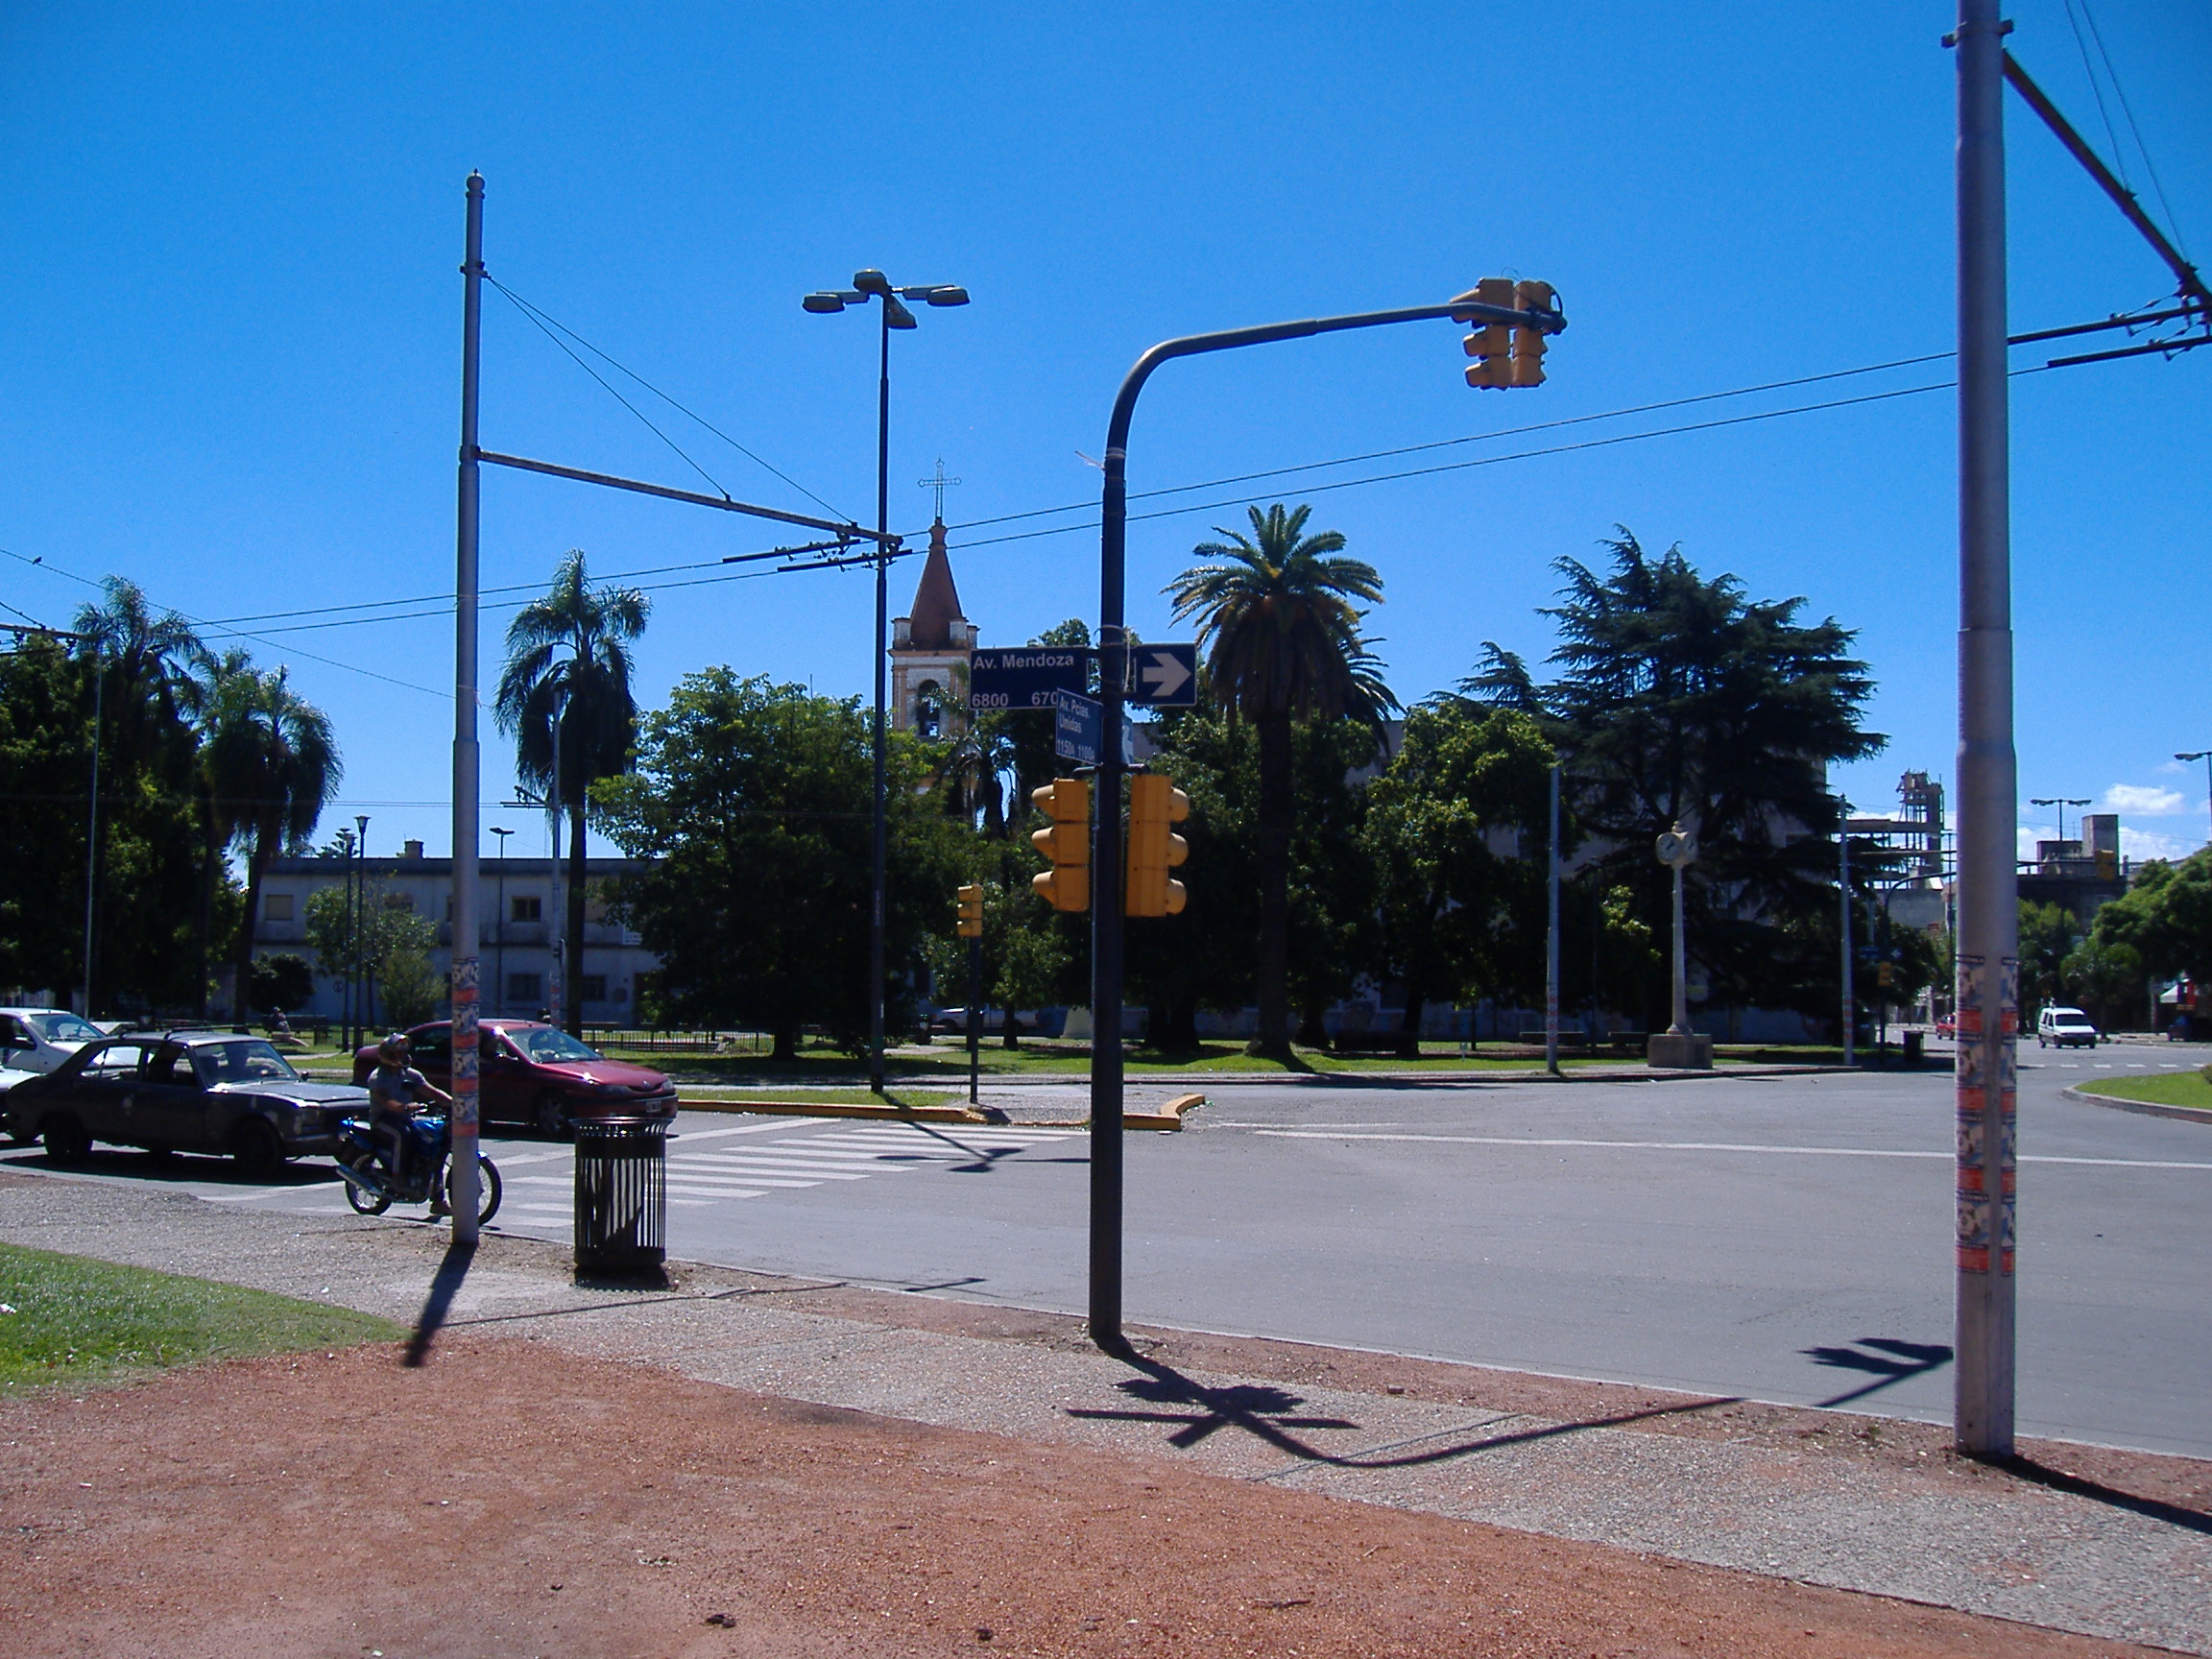 Fotomultas modo ON: atención porque se reducen velocidades máximas en avenidas rosarinas, algunas cercanas a Funes